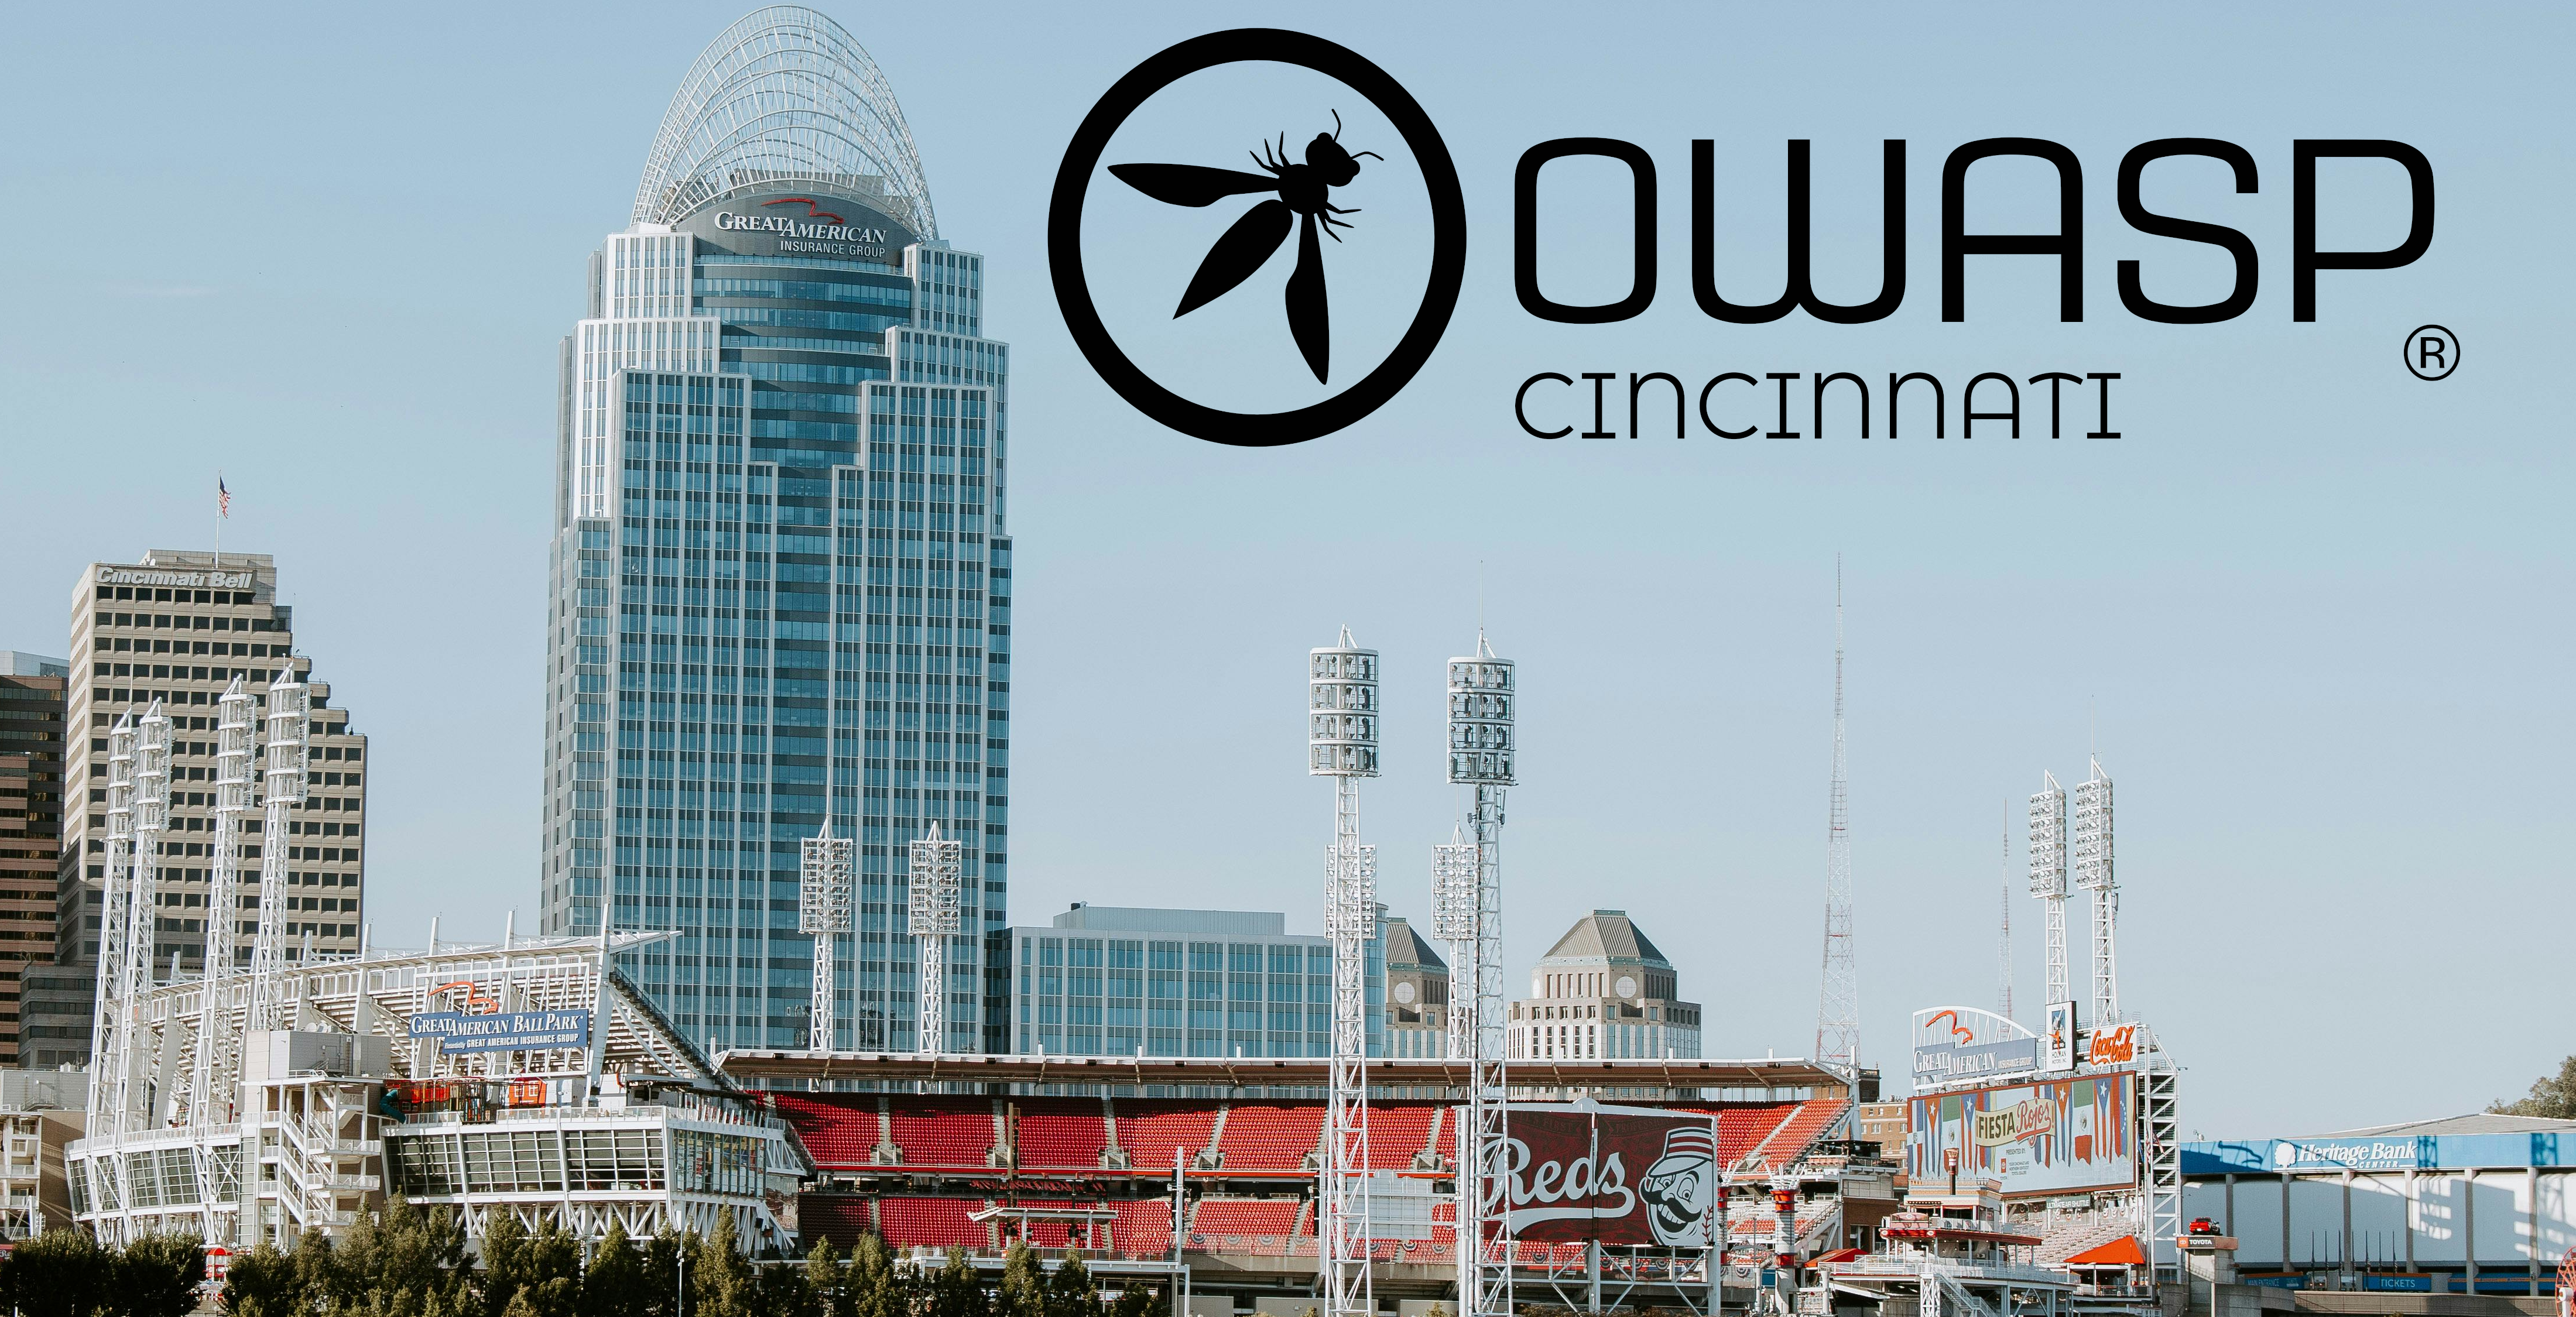 OWASP Cincinnati